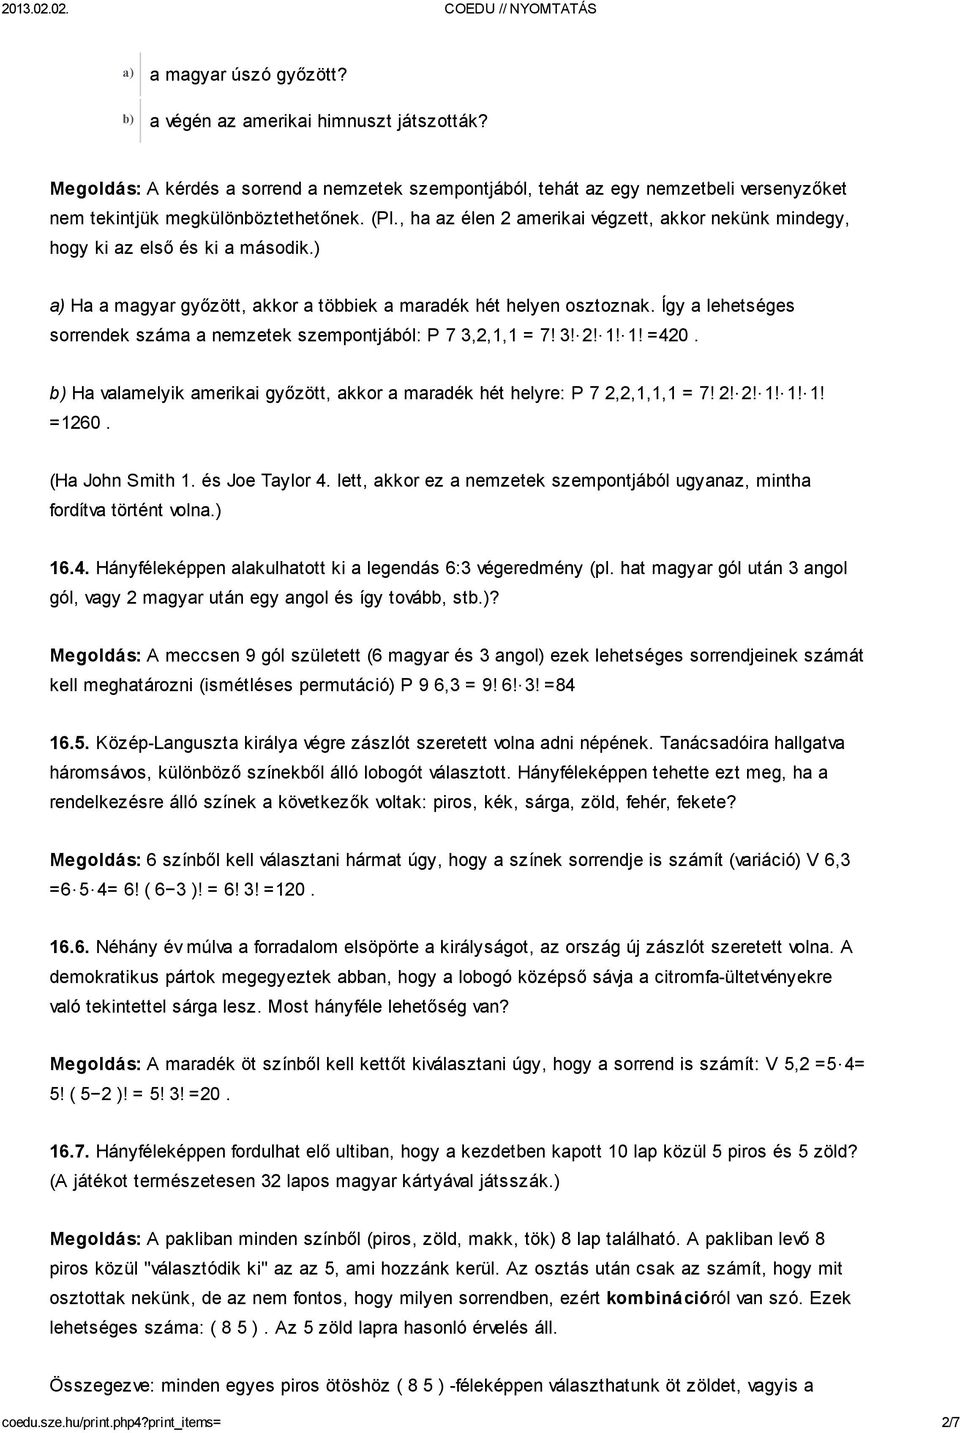 Tananyag: Kiss Béla - Krebsz Anna: Lineáris algebra, többváltozós  függvények, valószínűségszámítás, - PDF Free Download